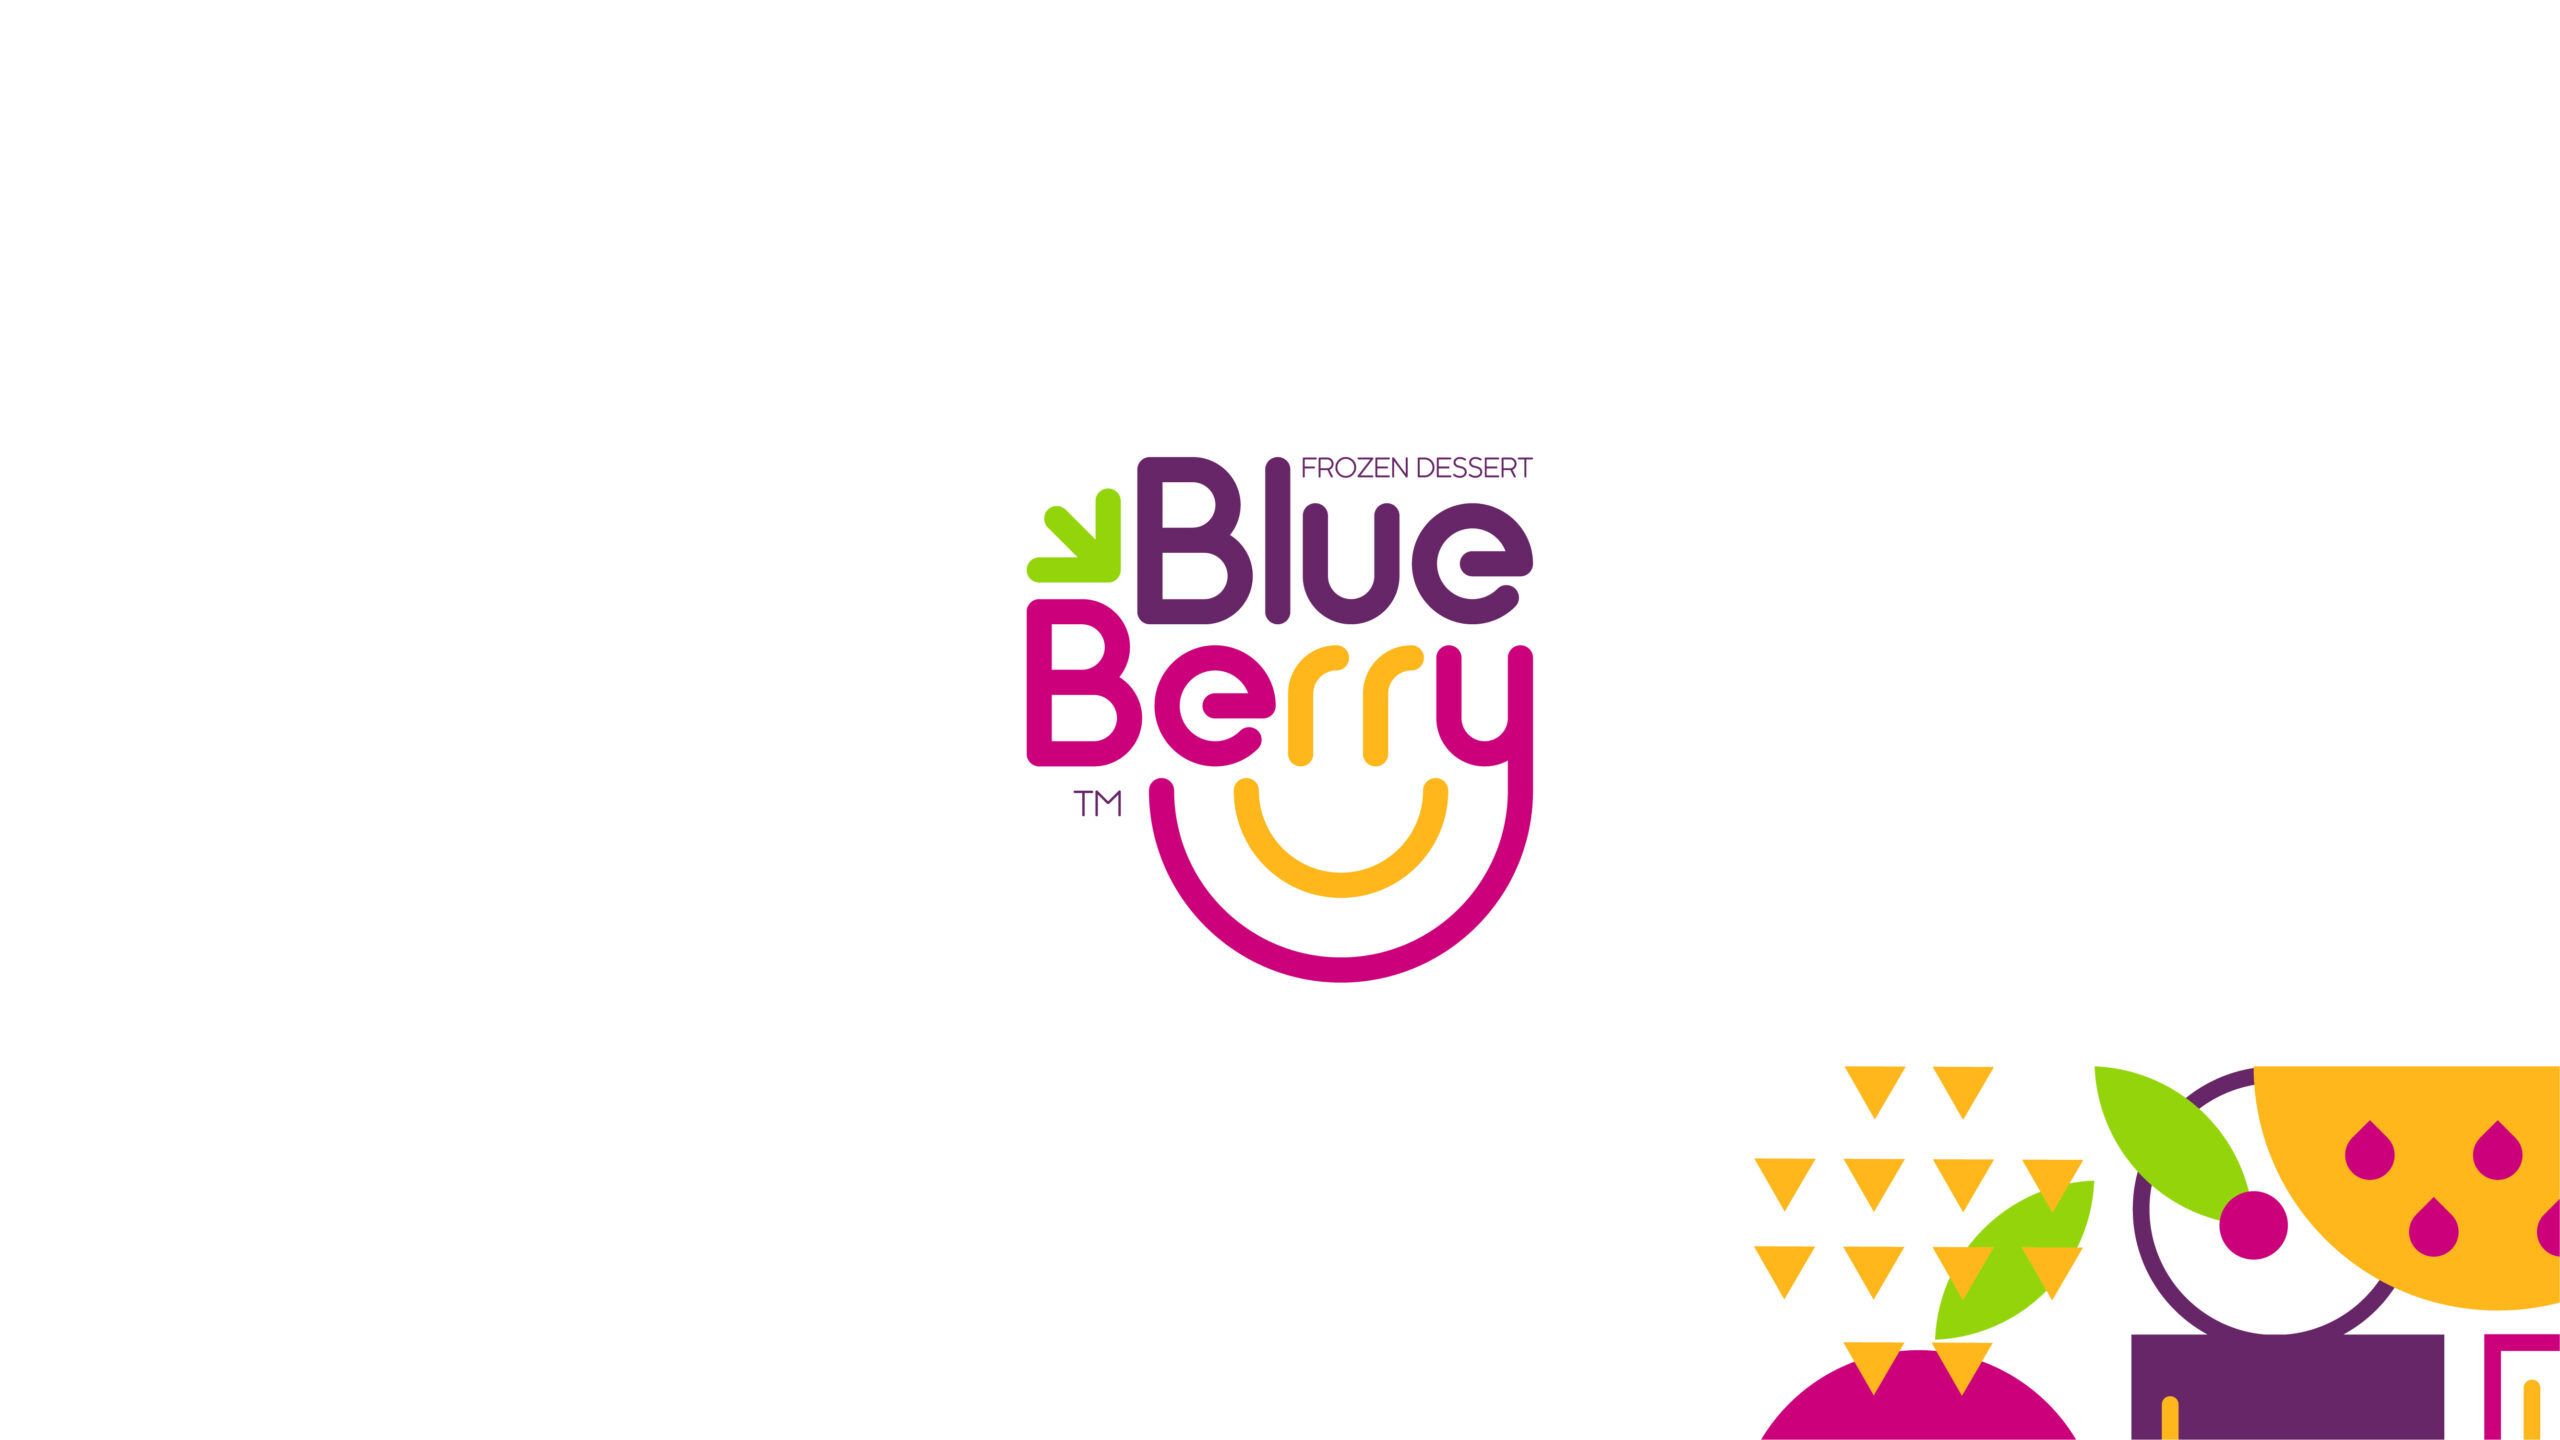 Blueberry-Frozen-Dessert-Branding-By-Millimeter-Creative-Agency-Cover-M13